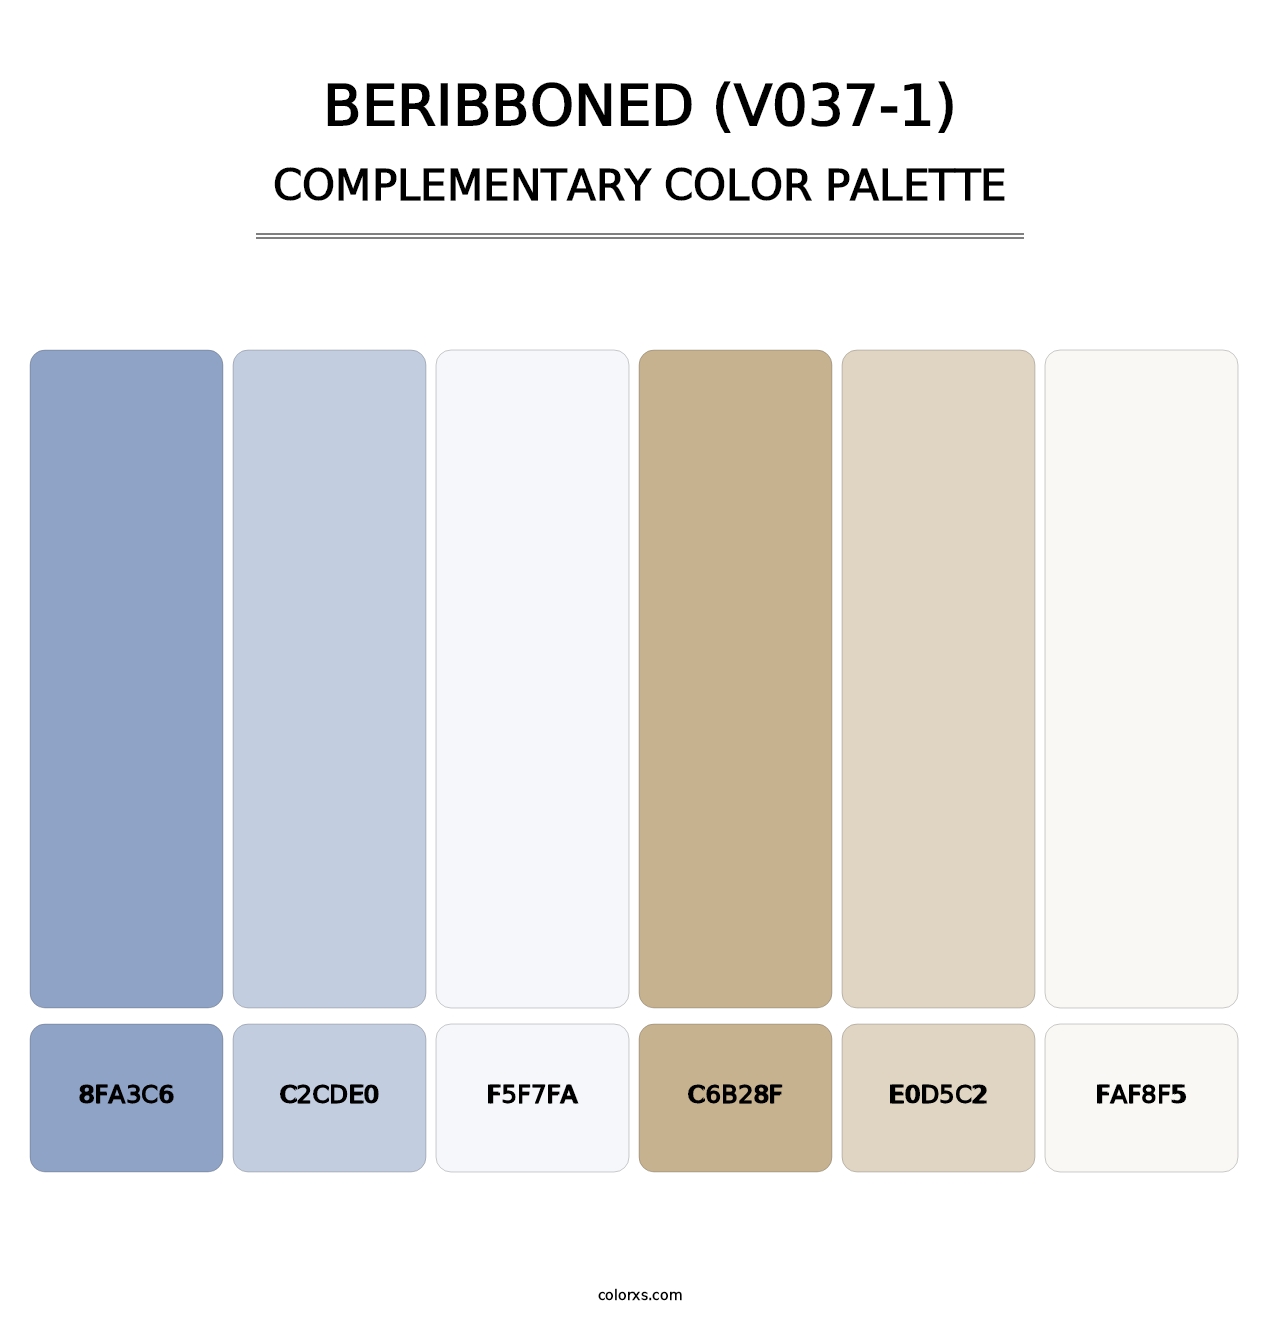 Beribboned (V037-1) - Complementary Color Palette